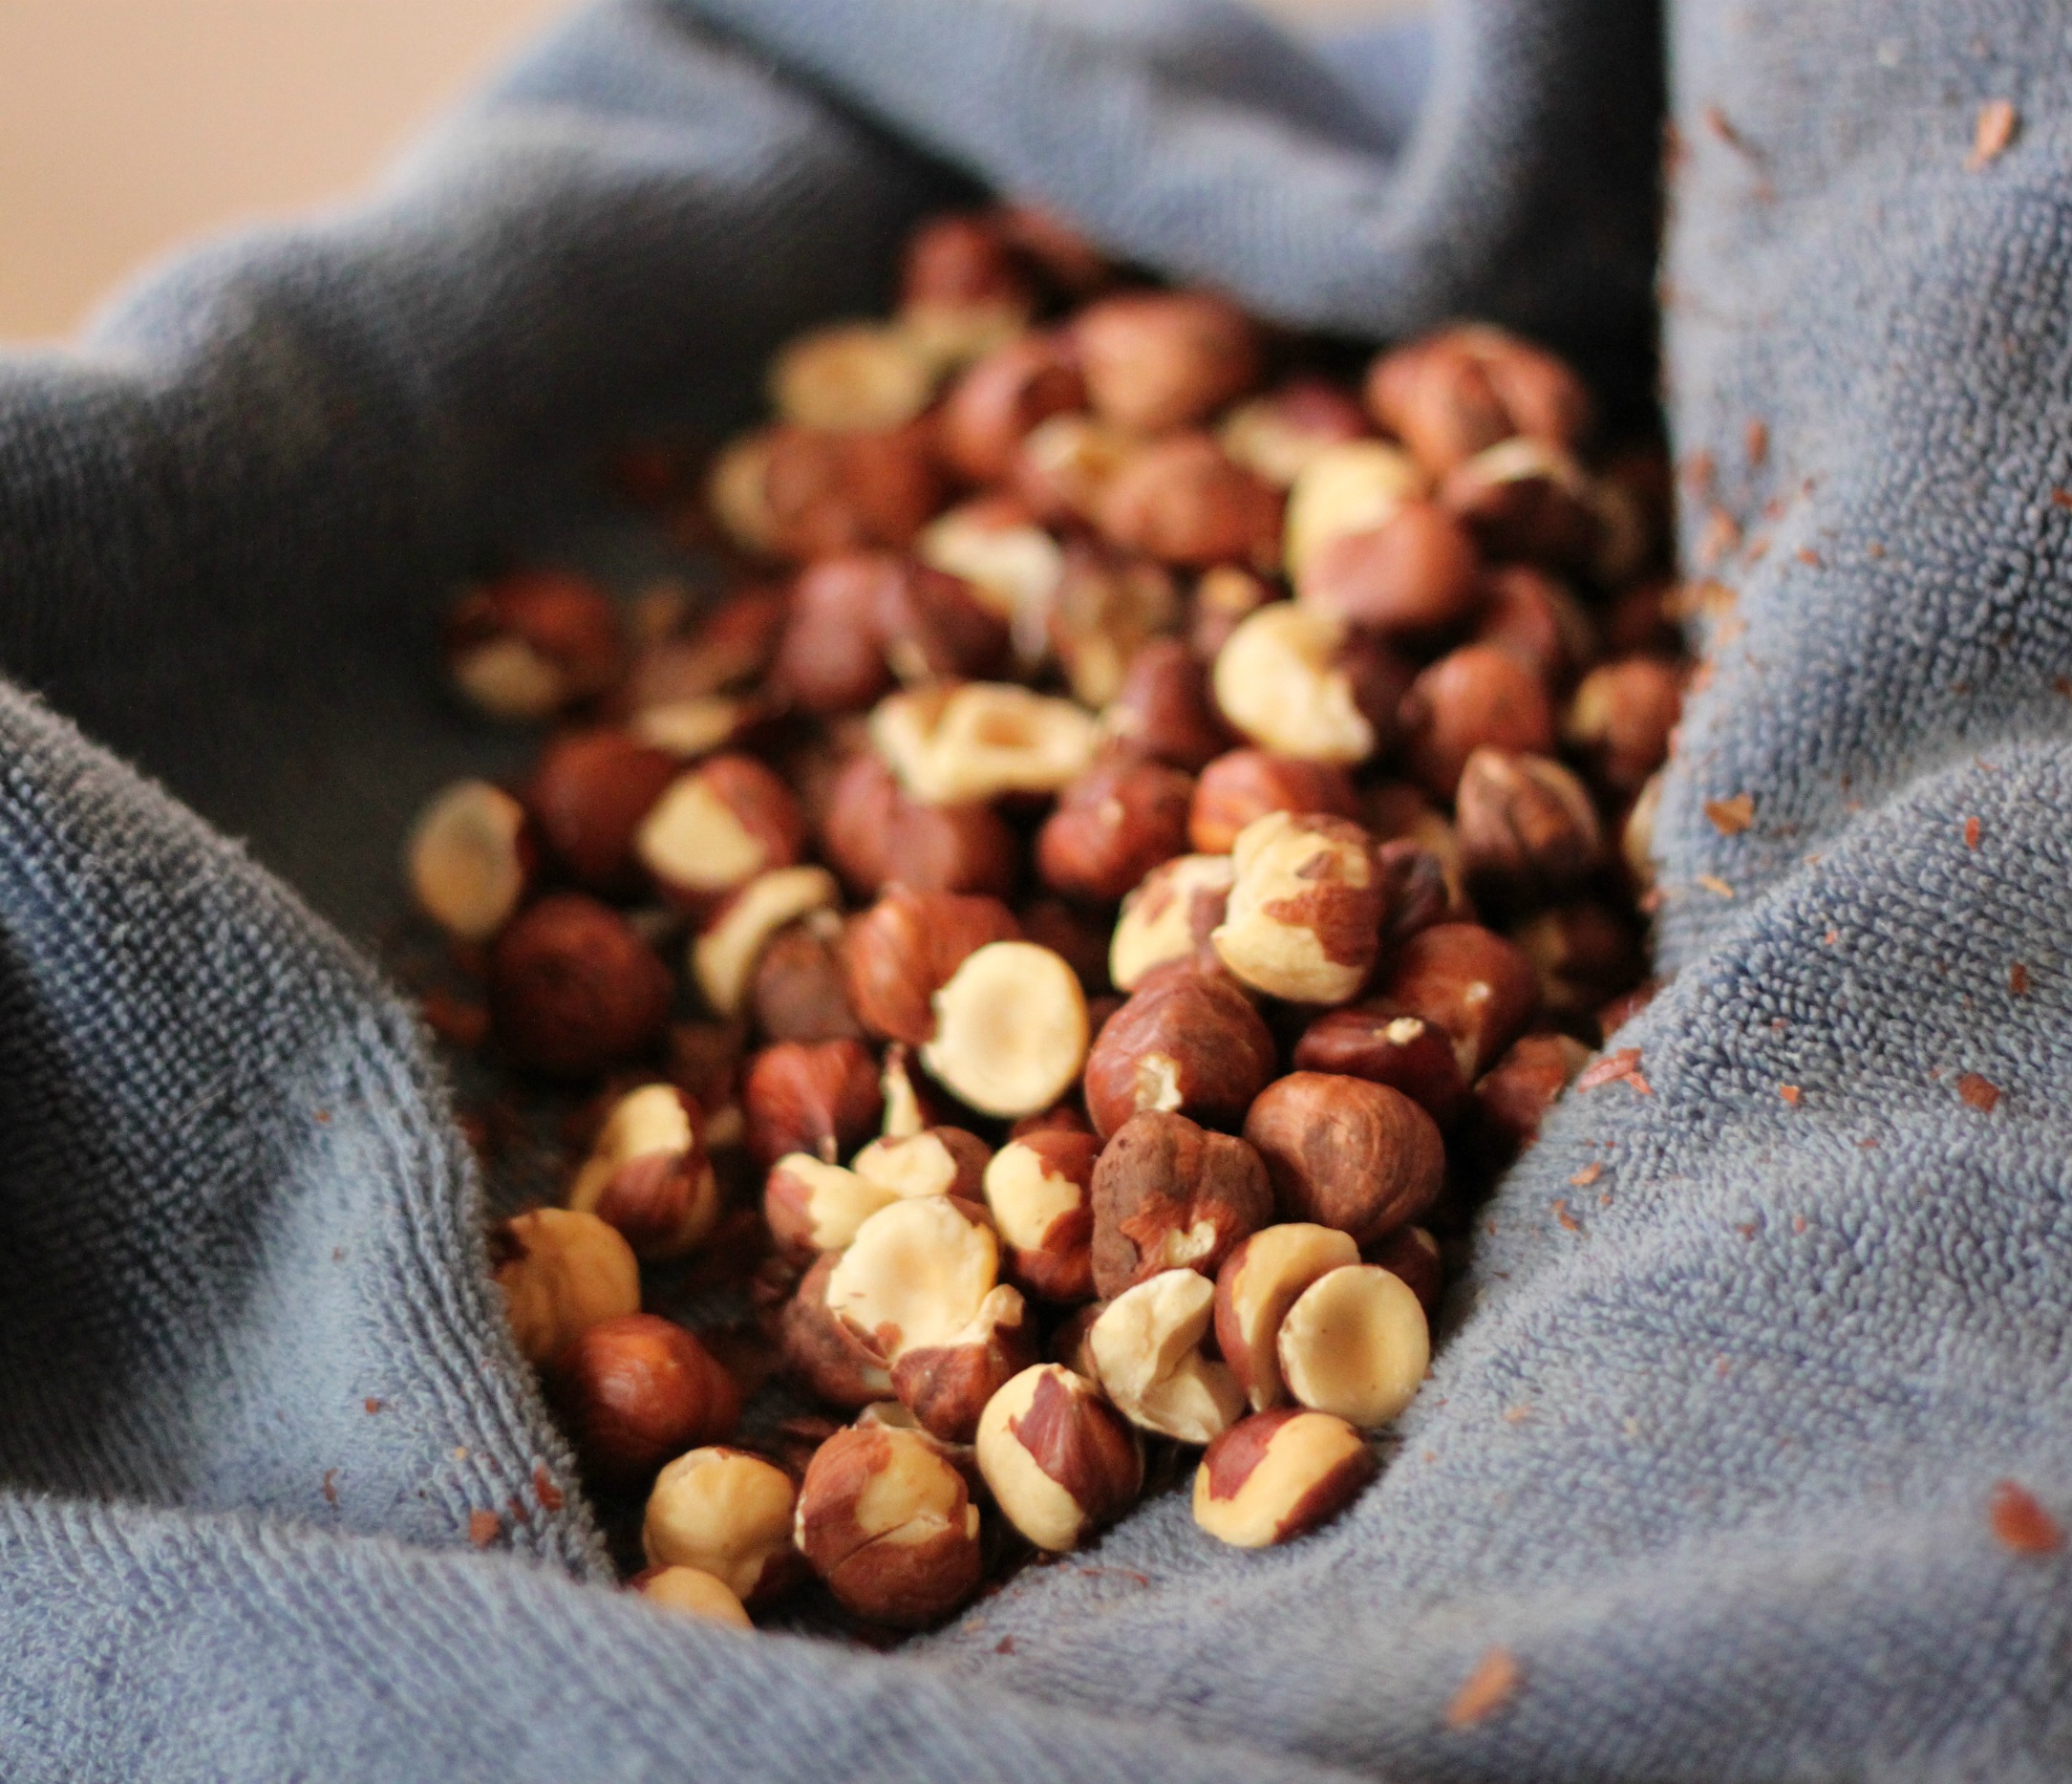 Roasted hazelnuts in kitchen towel